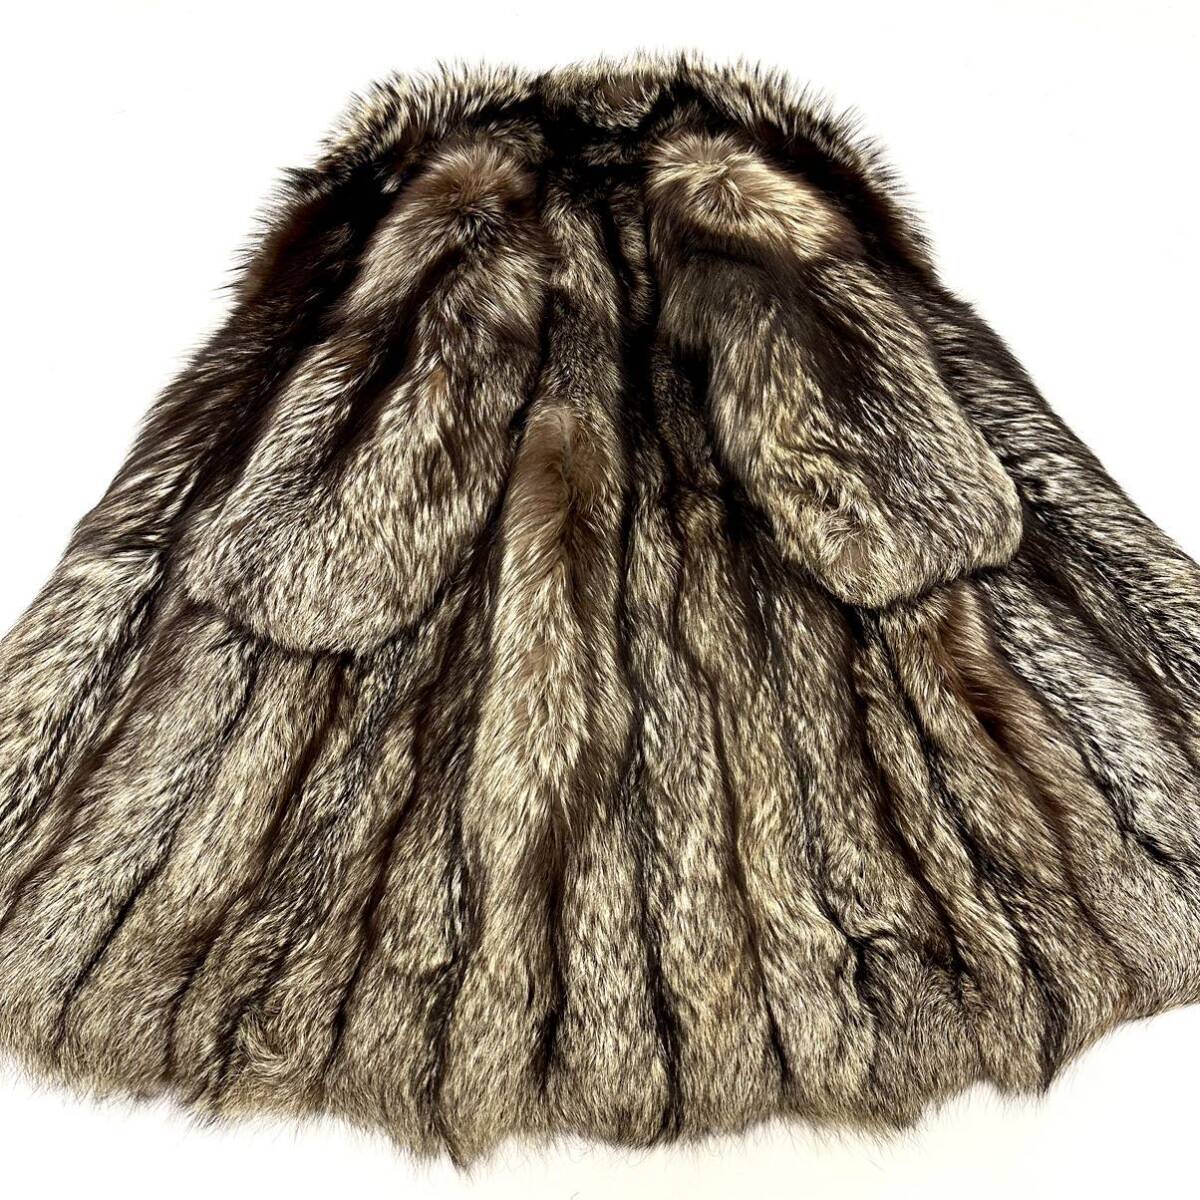 [. quotient ] h2851 SAGA FOX серебристая лиса мужской MENS полупальто лиса пальто длинное пальто . кожа FOX fox длина примерно 110cm